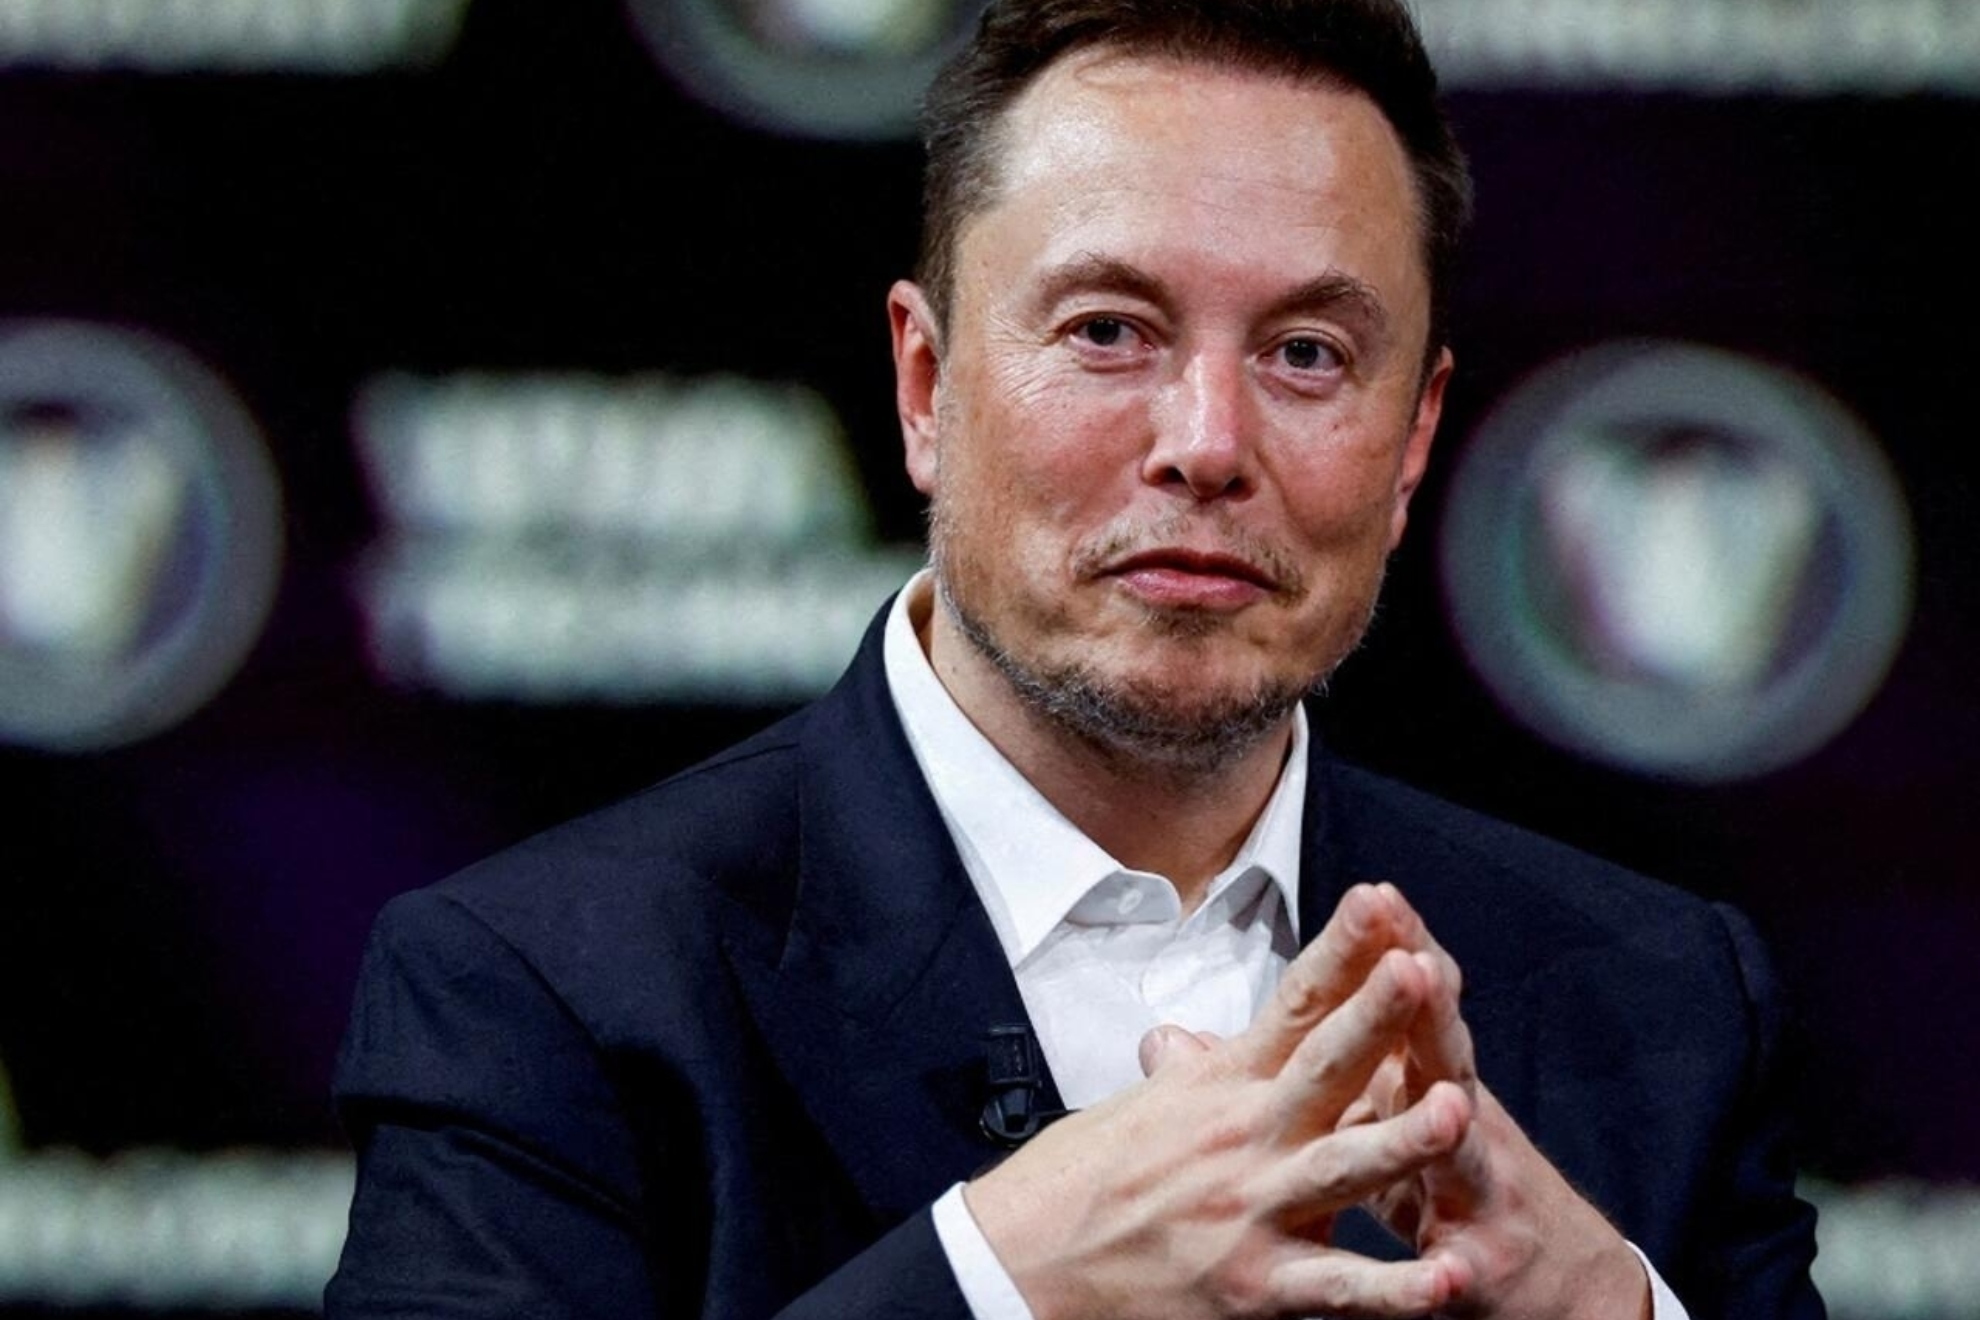 Un juez sentencia a Elon Musk: La demanda de X es un intento descarado de censura